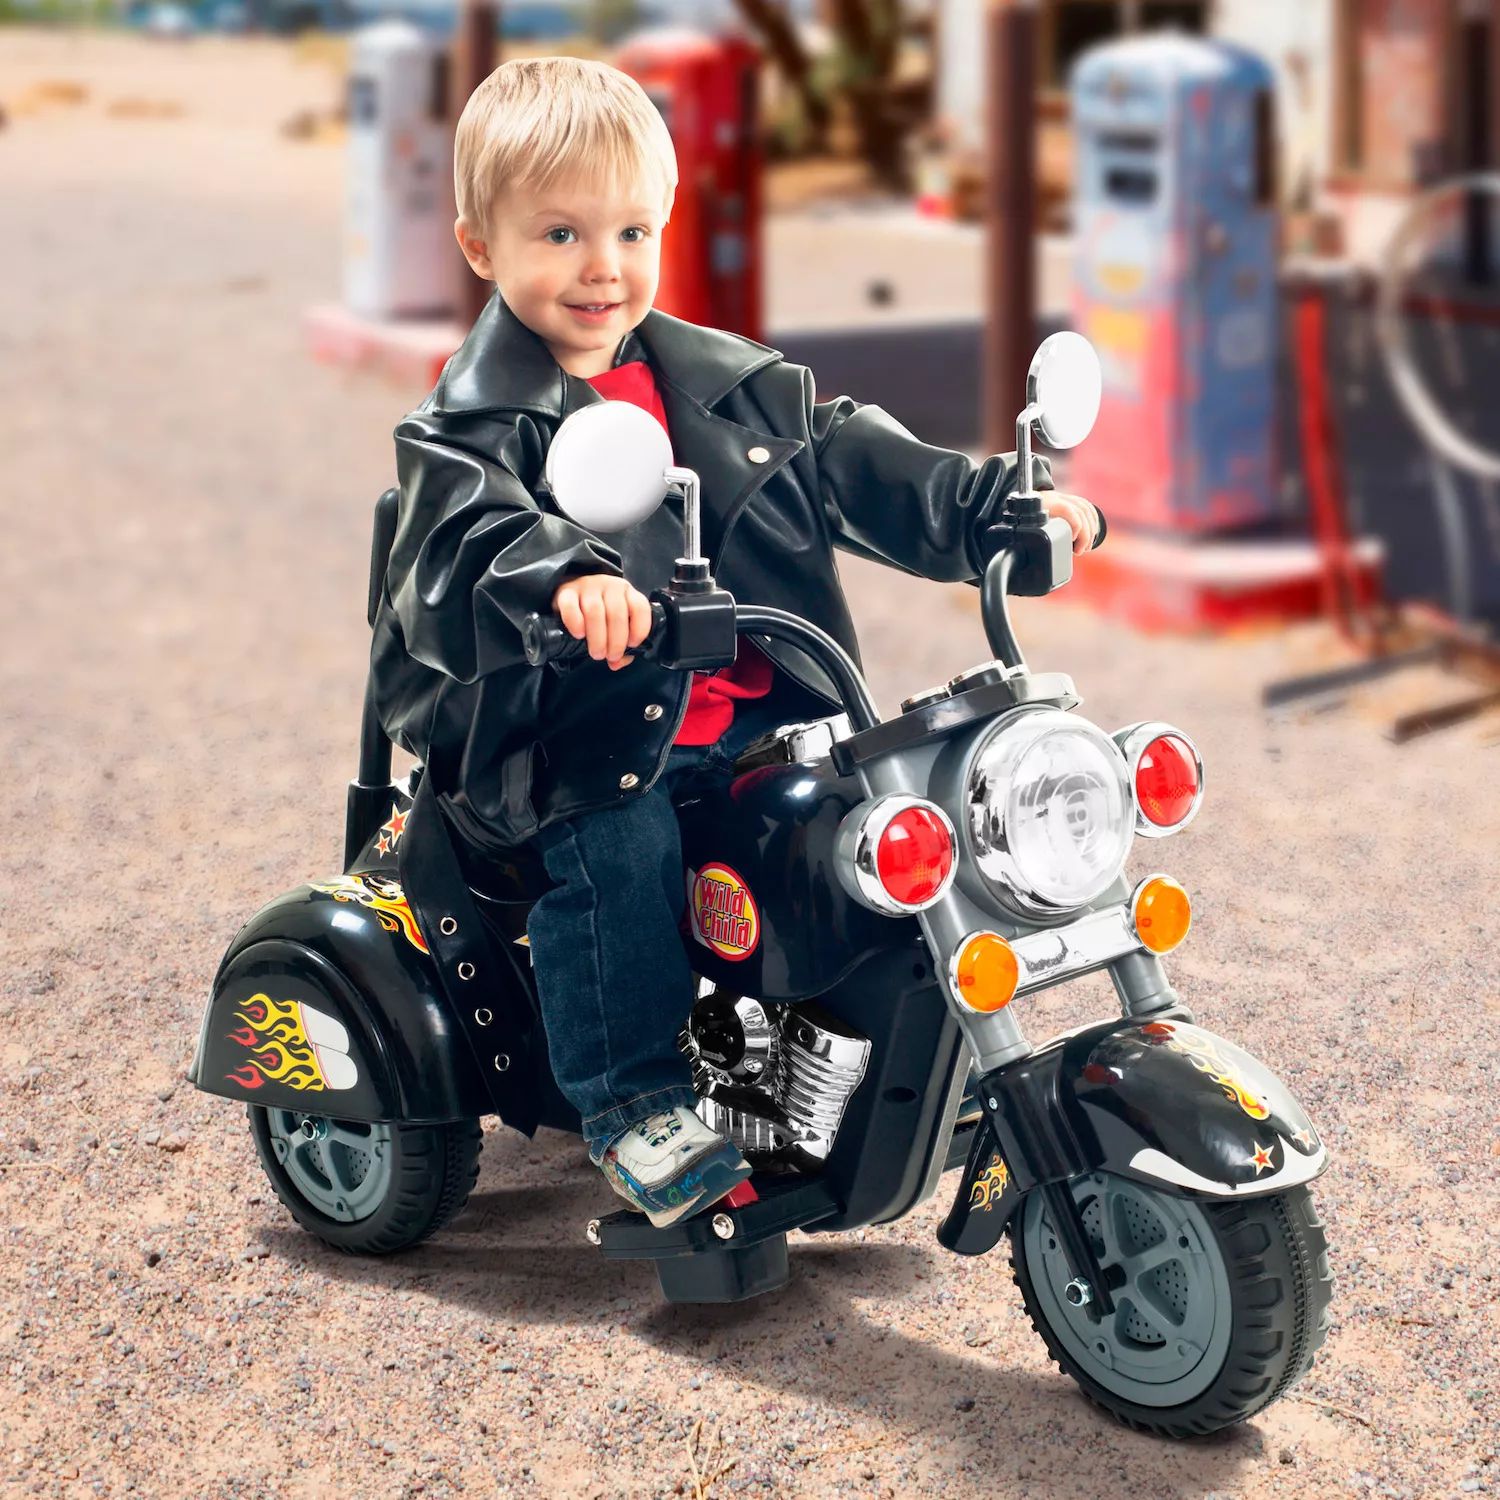 Куплю байки детские. Детский электромотоцикл Харлей Дэвидсон. Детский мотоцикл Харлей Дэвидсон на аккумуляторе. D8360 мотоцикл детский. Детский электромотоцикл Wild child.